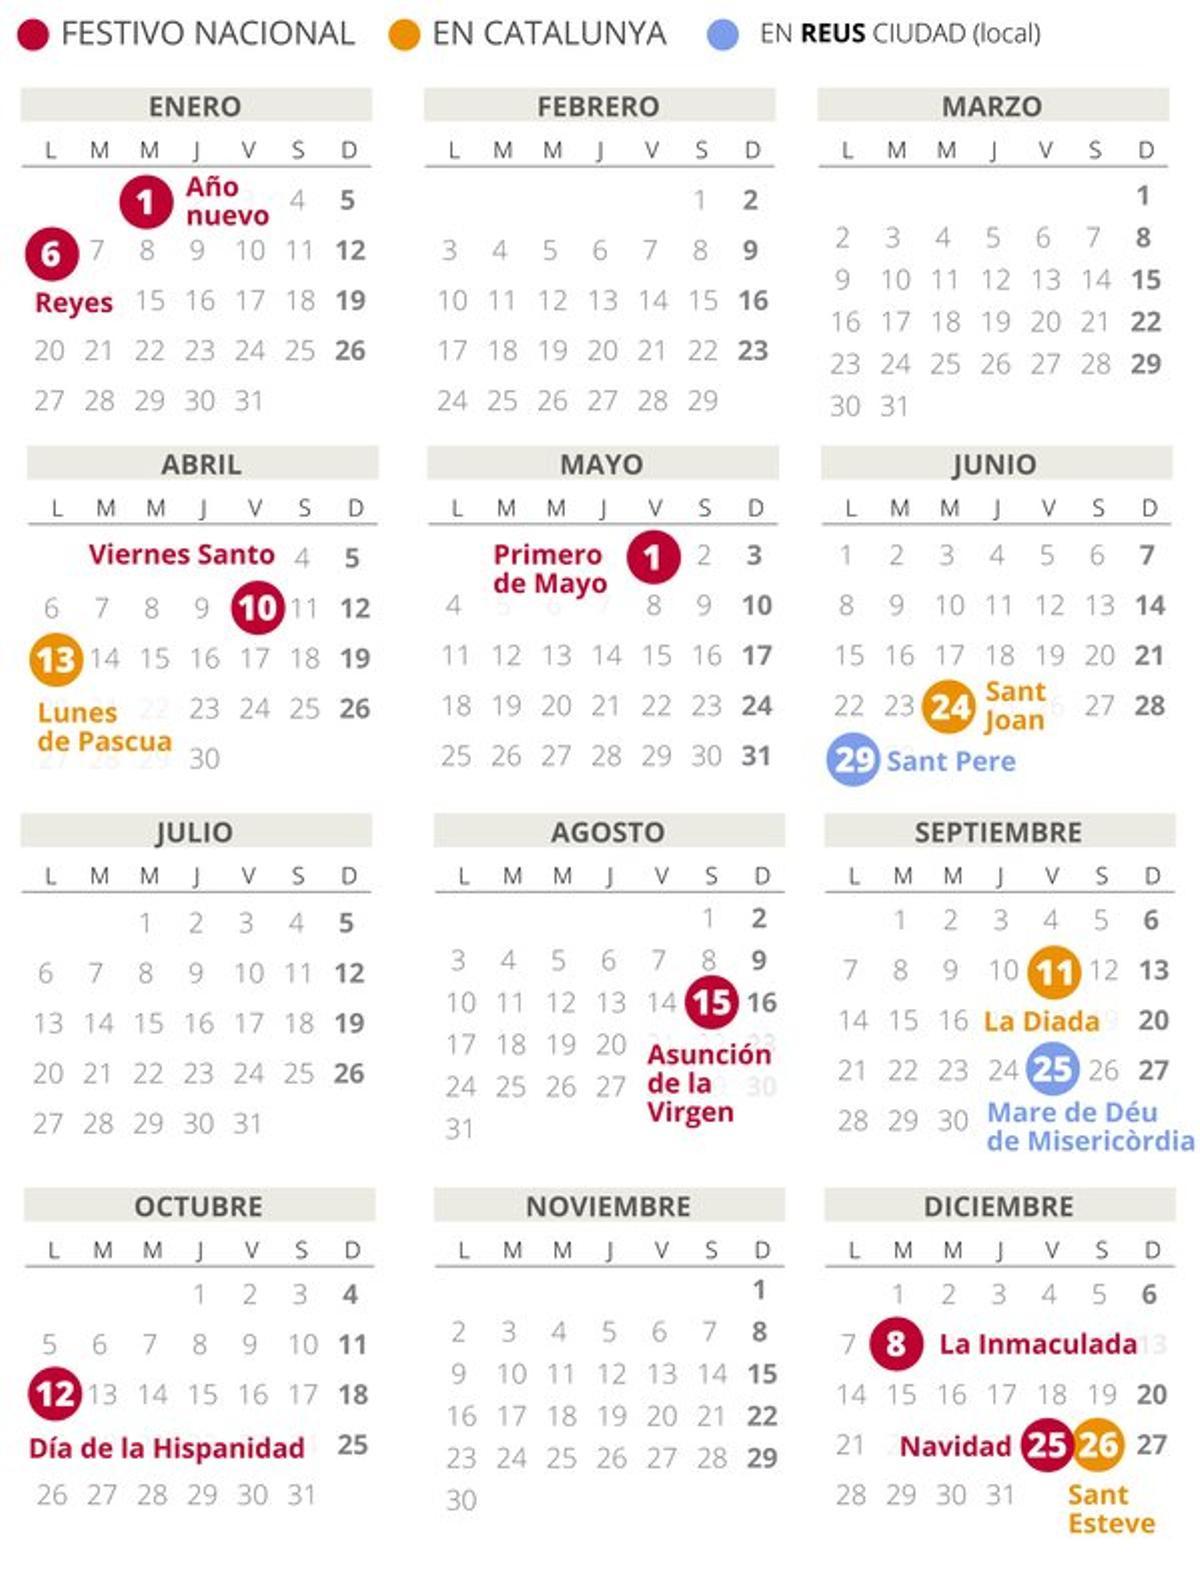 Calendario laboral de Reus del 2020.